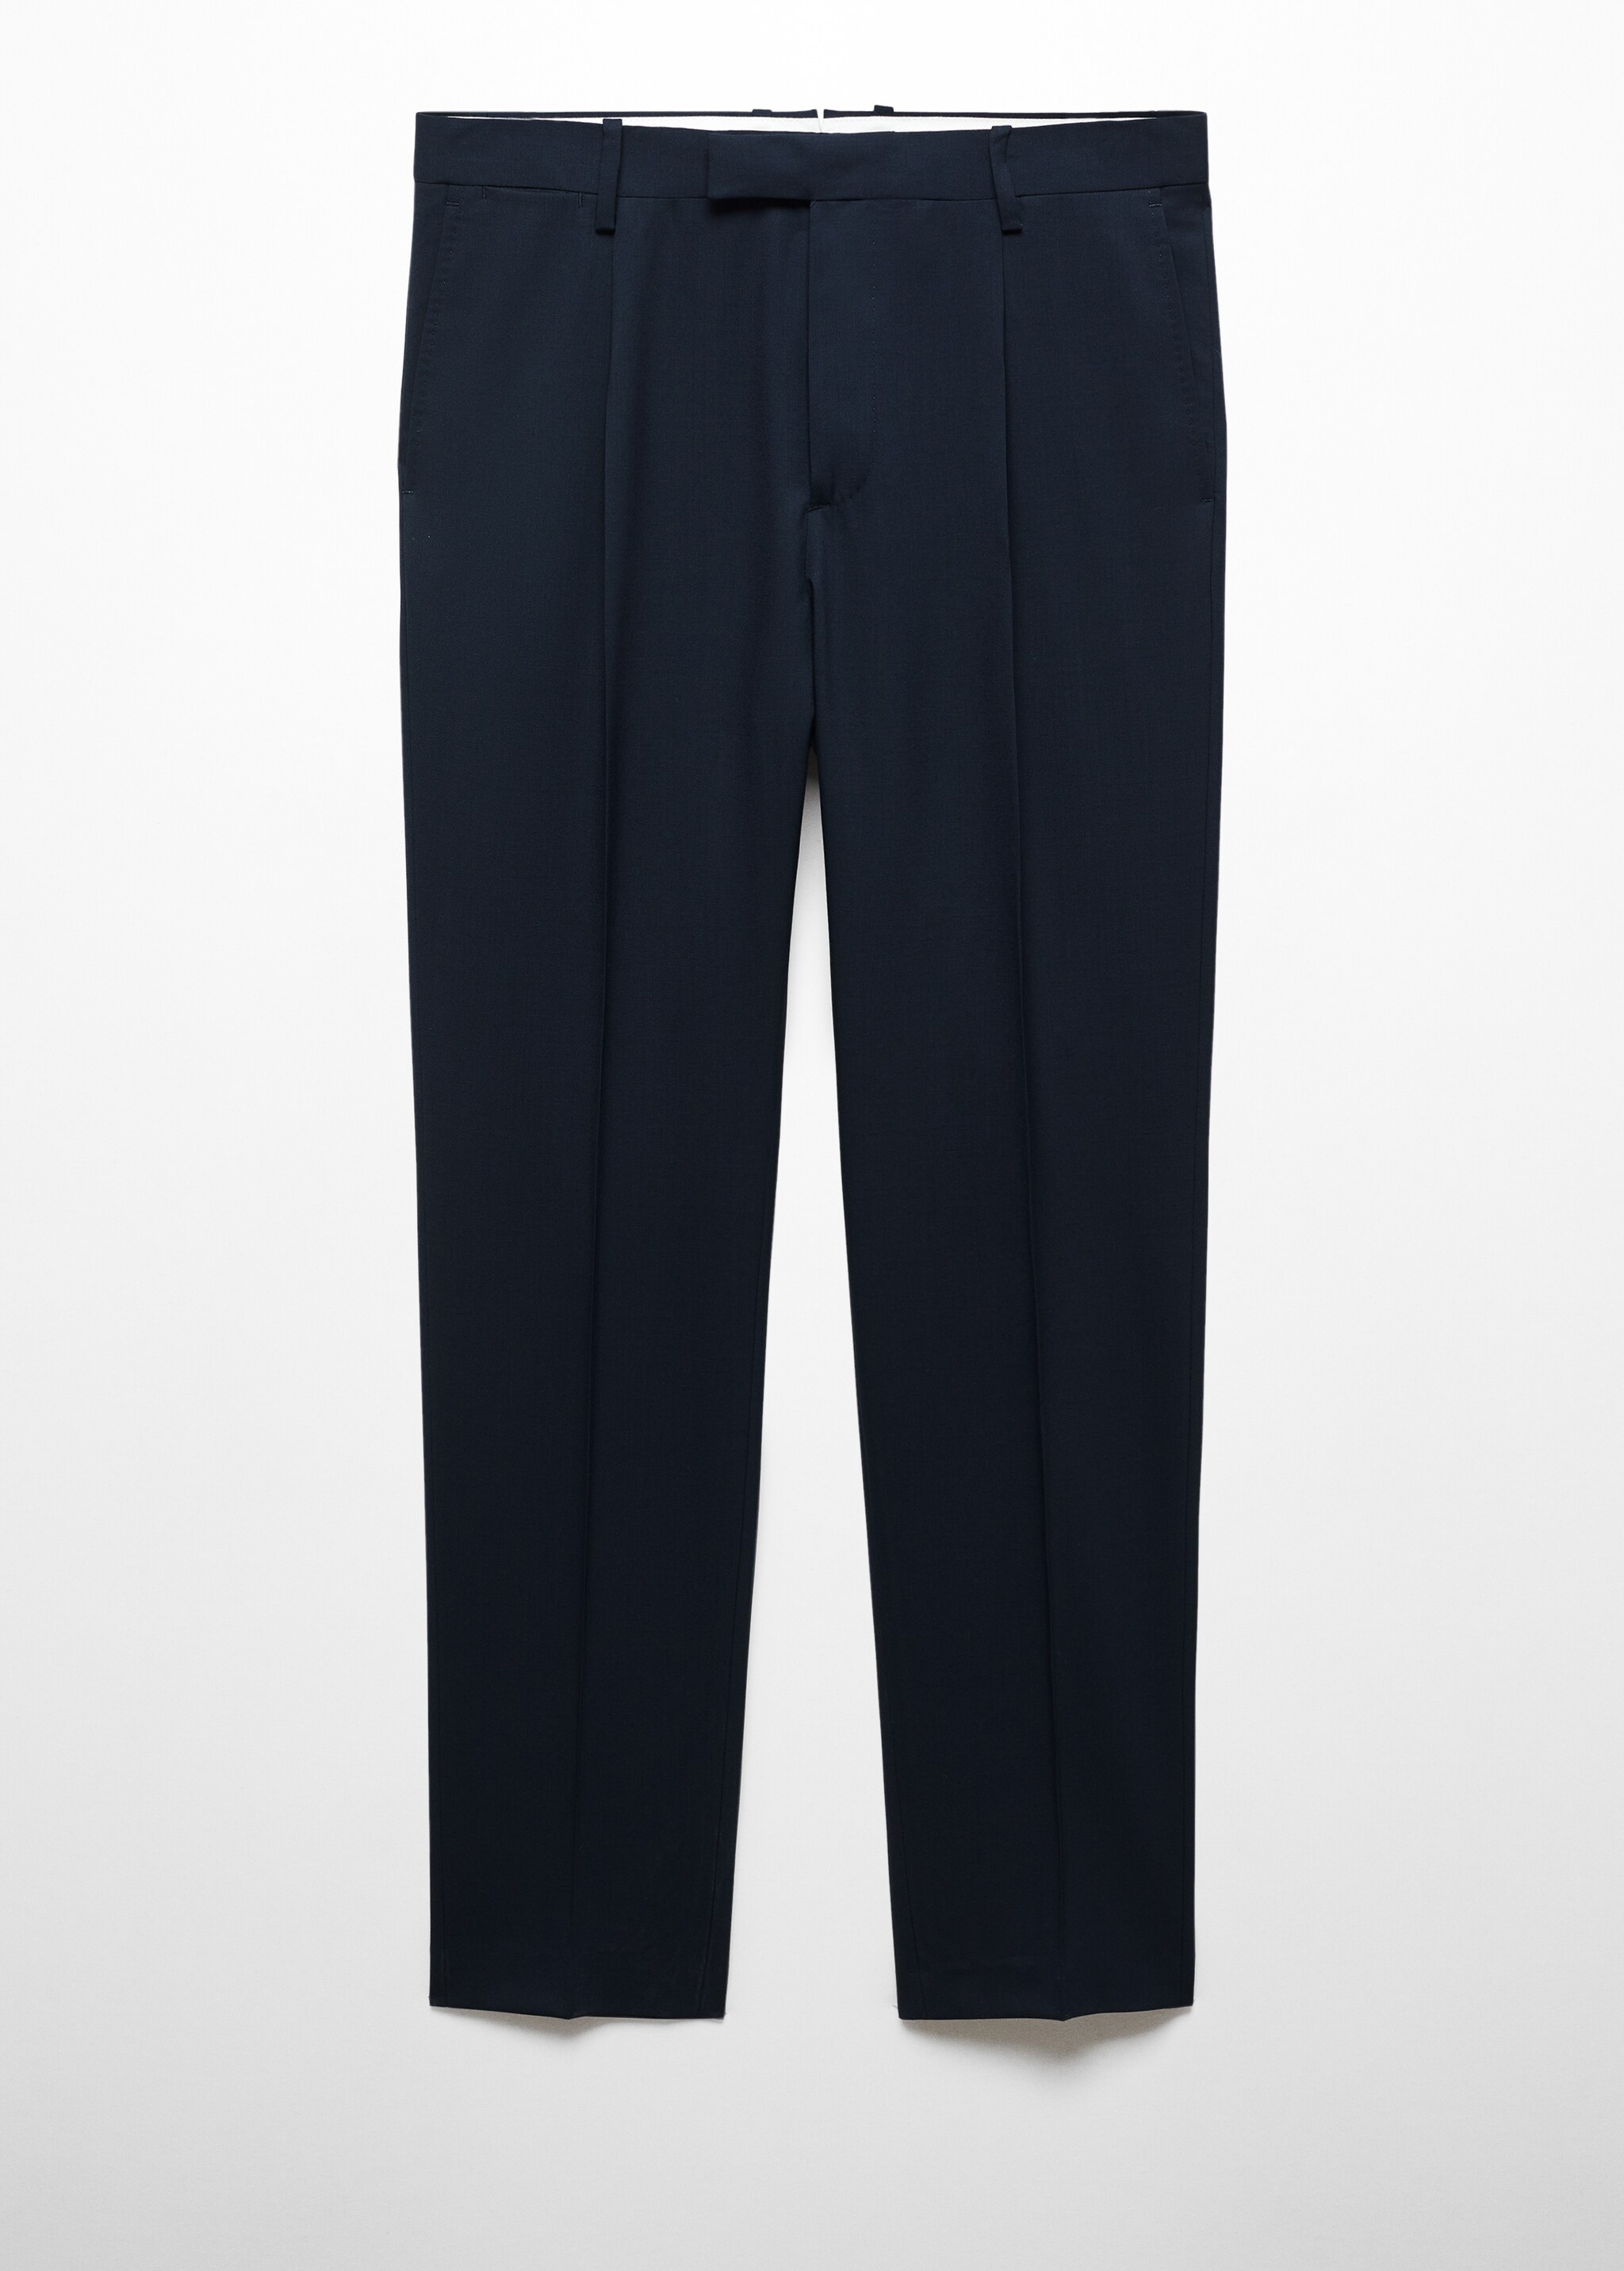 Pantalón traje slim fit 100% lana virgen - Artículo sin modelo